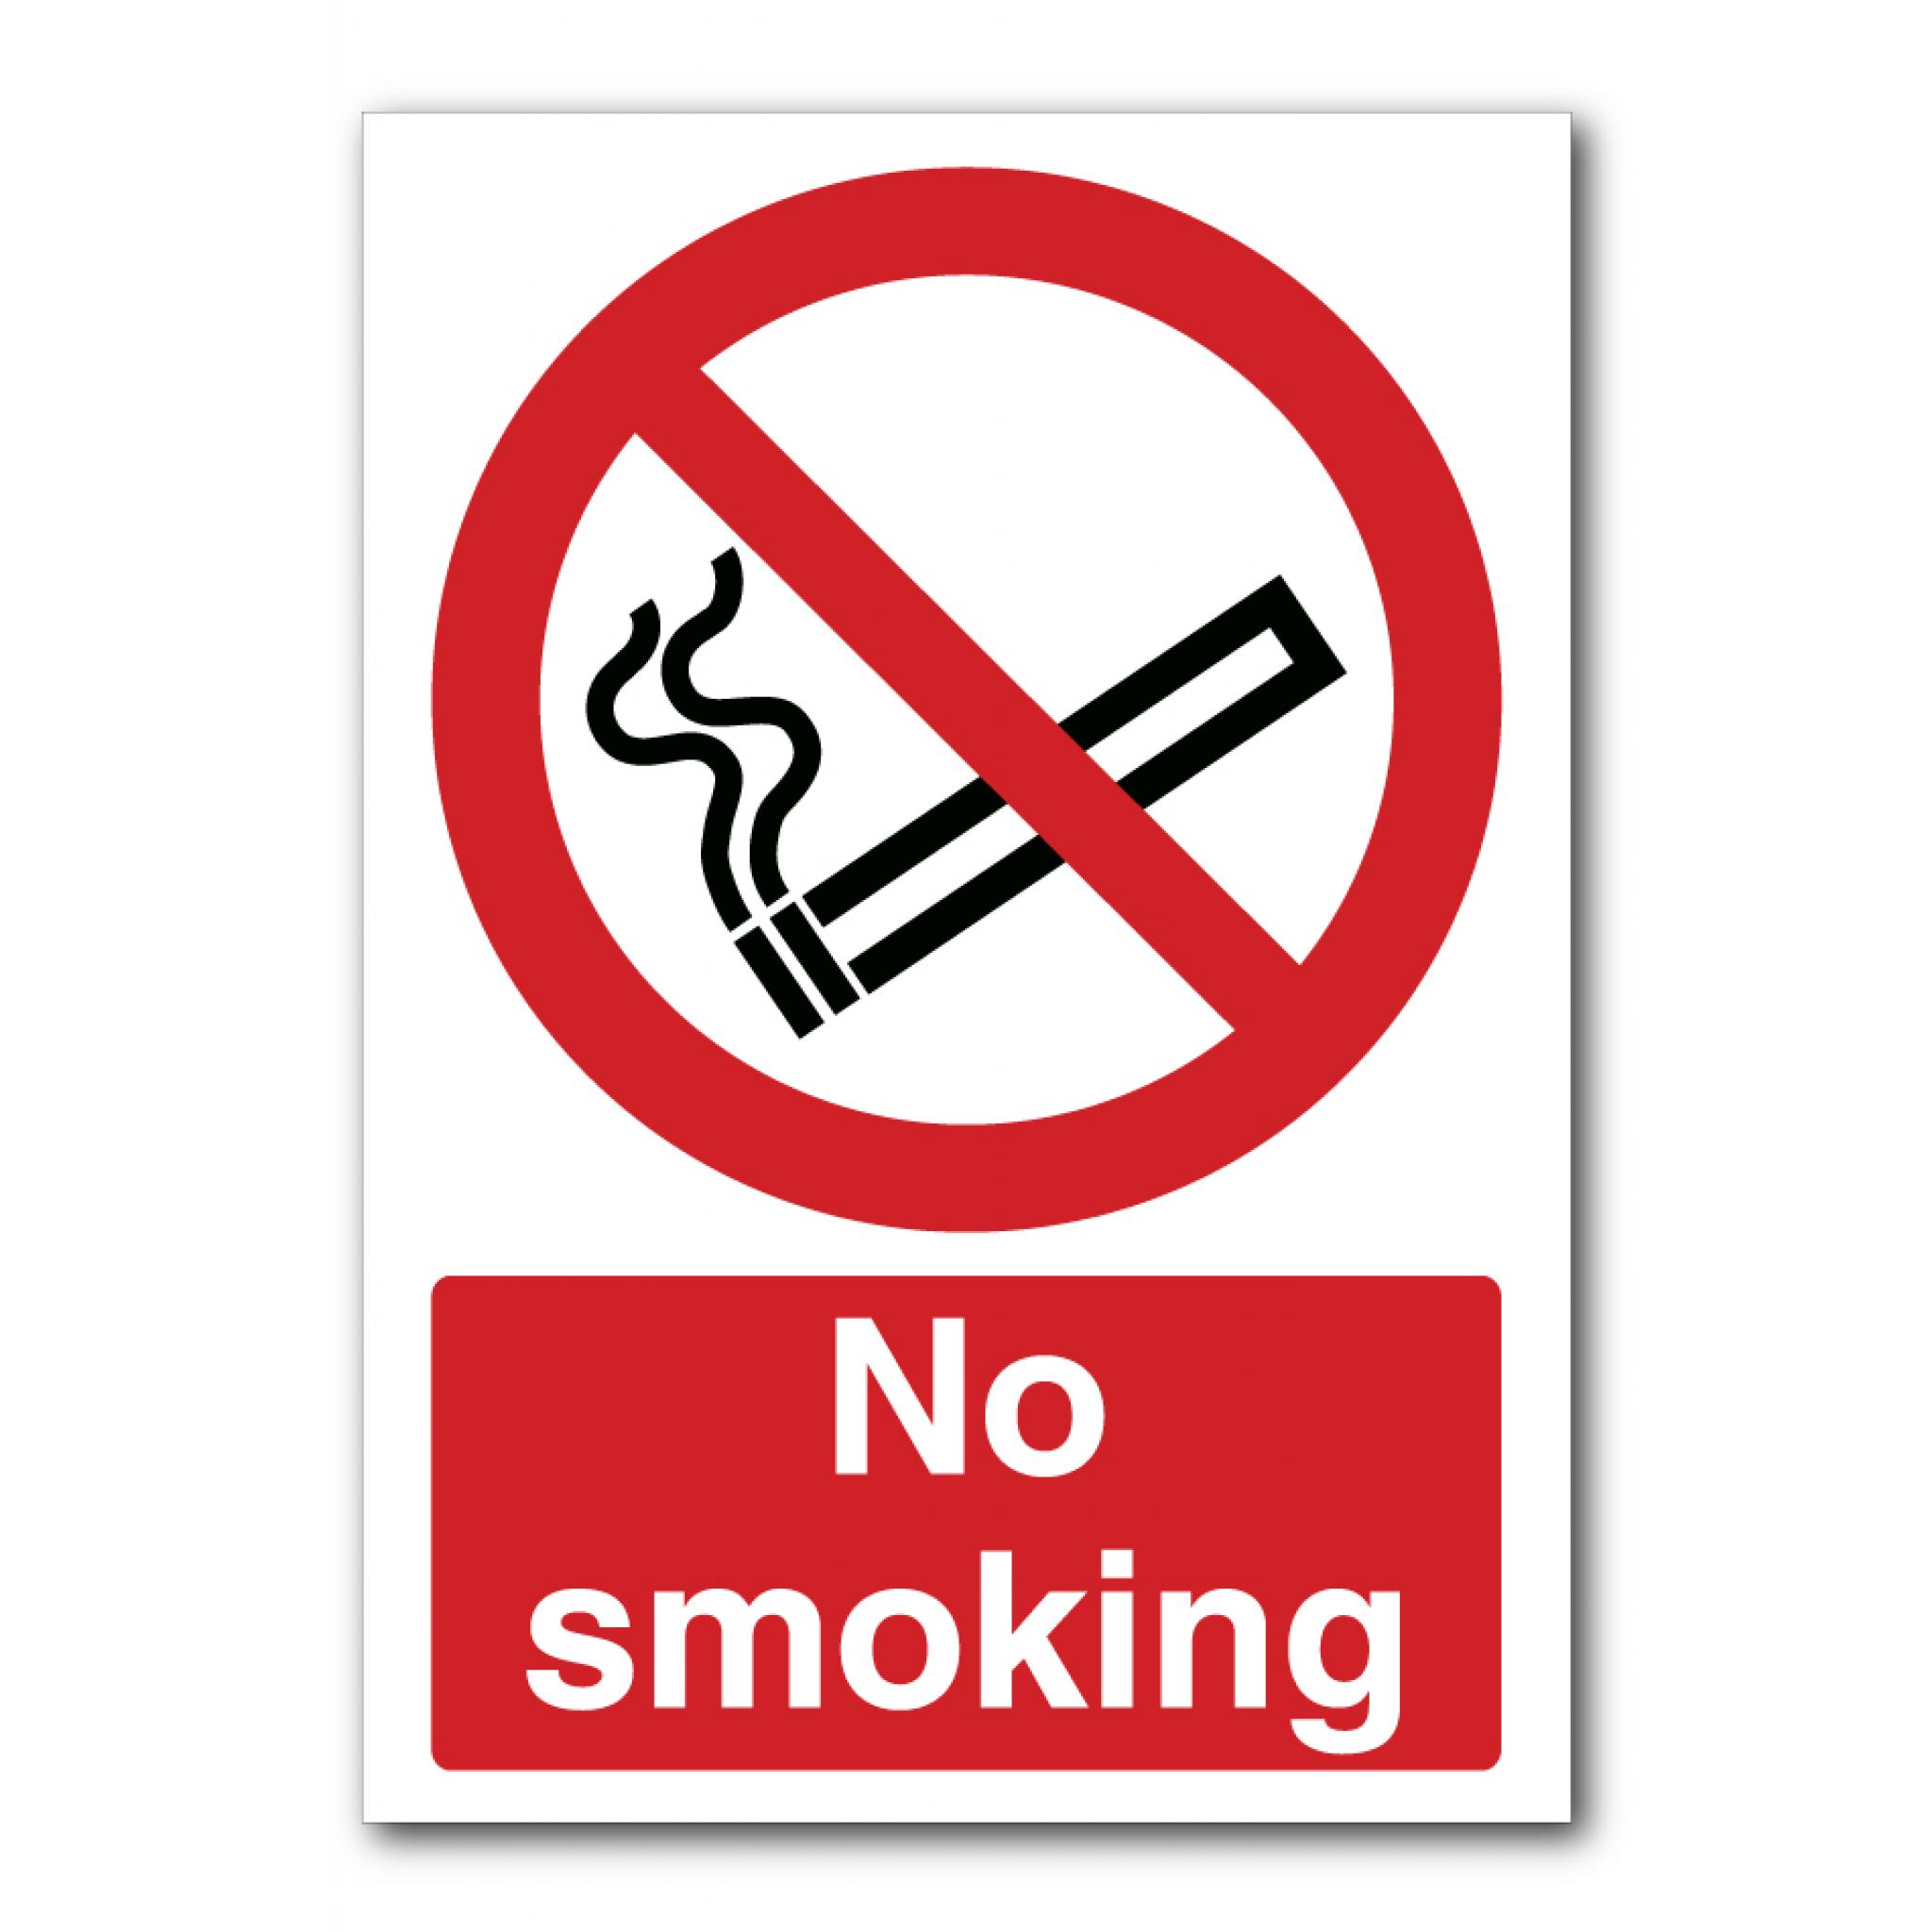 Purpose Of No Smoking Sign